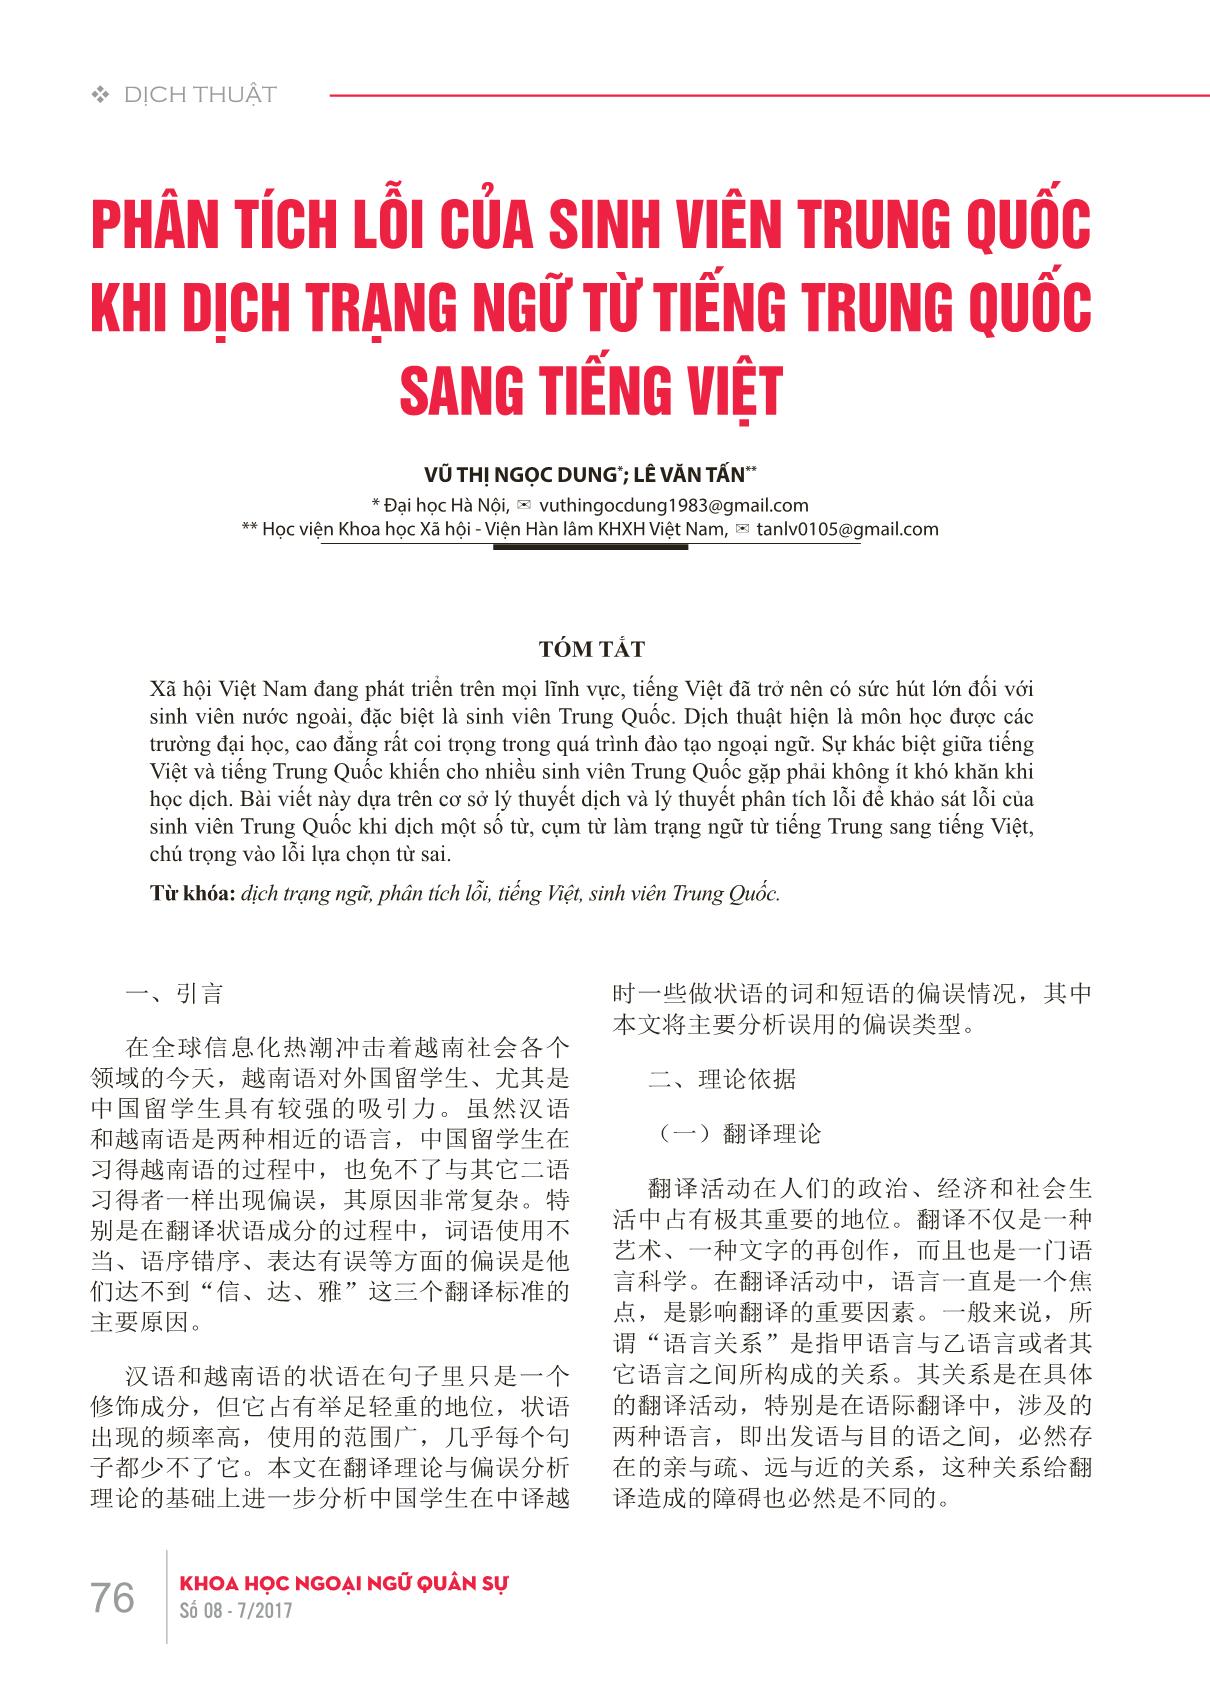 Phân tích lỗi của sinh viên Trung Quốc khi dịch trạng ngữ từ tiếng Trung Quốc sang tiếng Việt trang 1